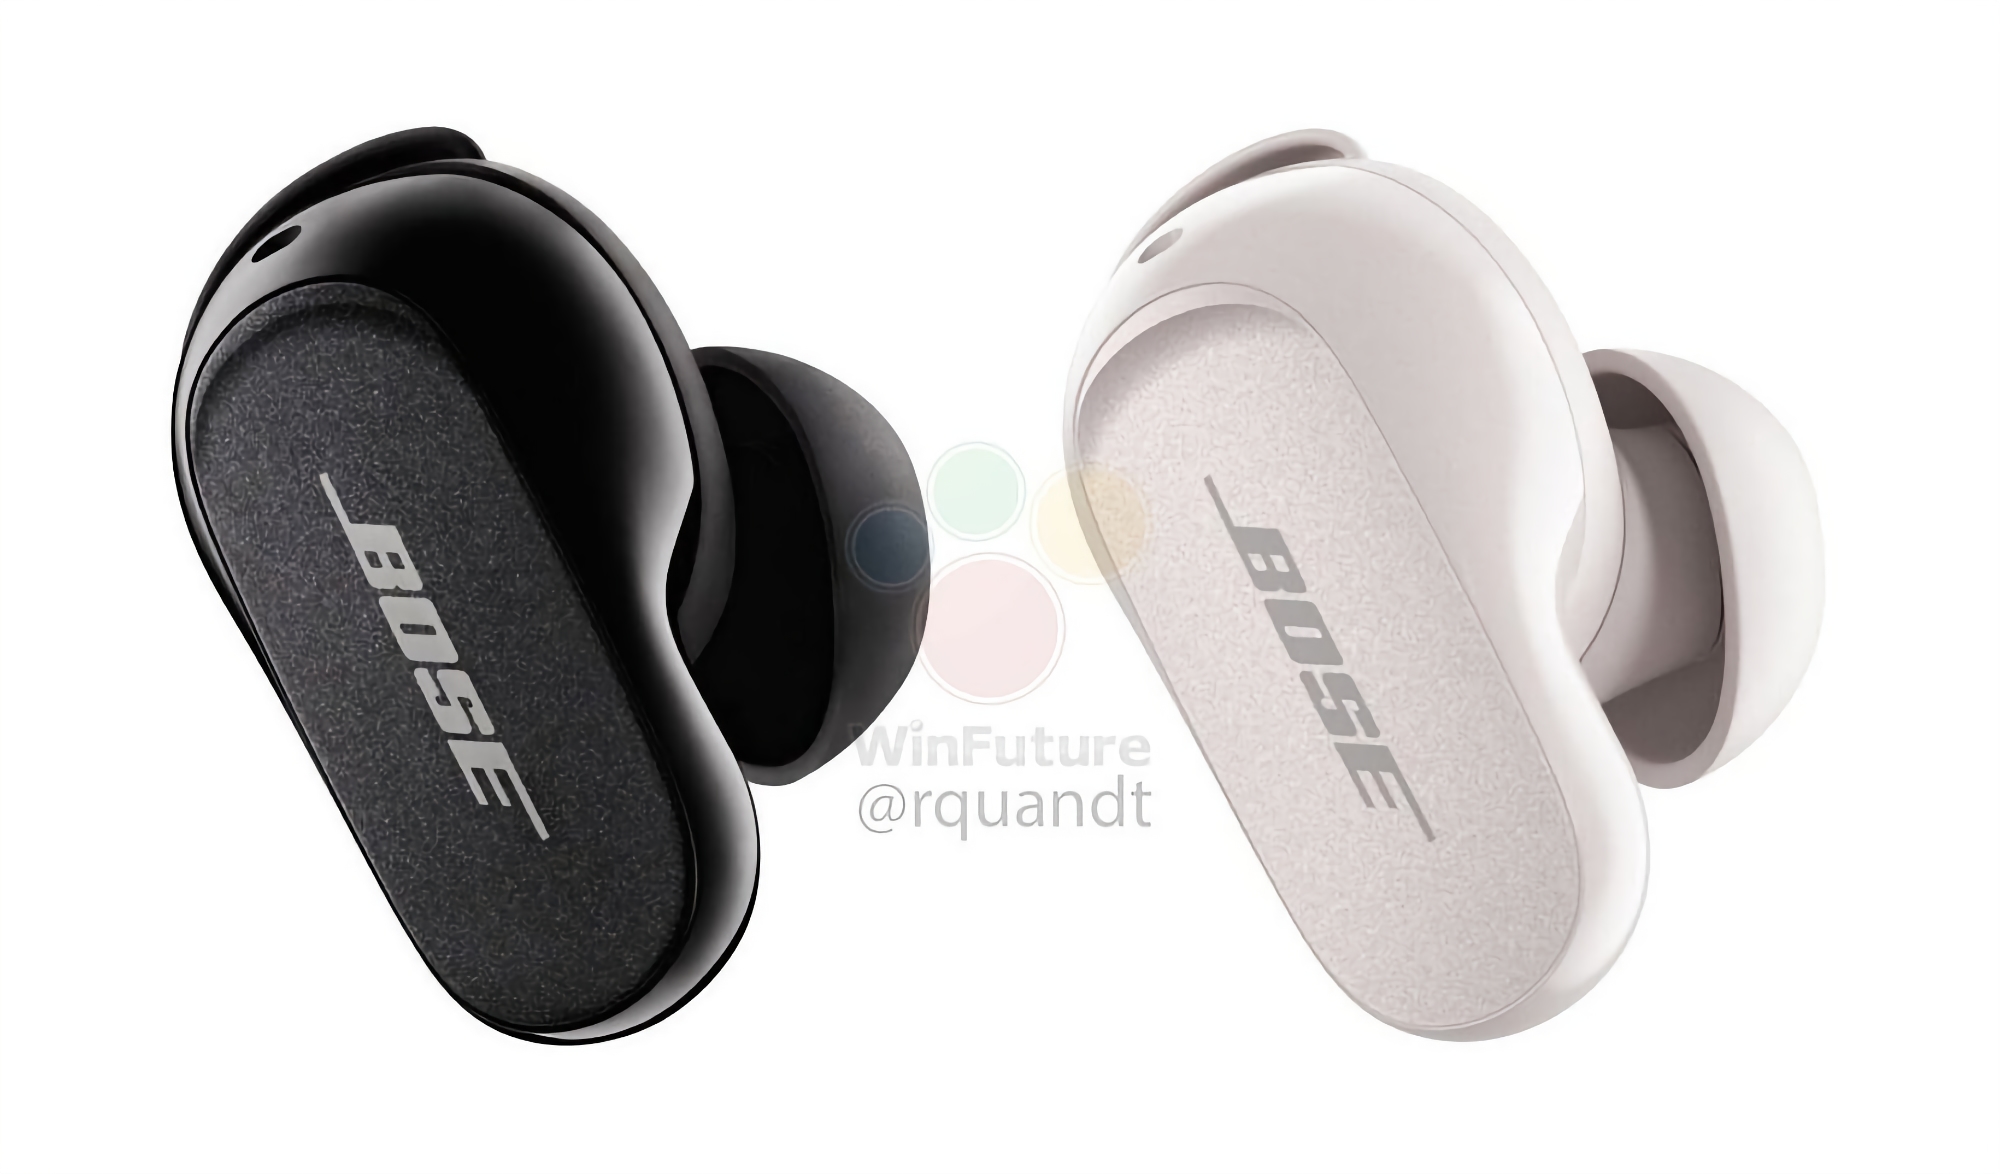 Bose prepara los TWS QuietComfort Earbuds II con un nuevo diseño, ANC y un precio de 299 dólares